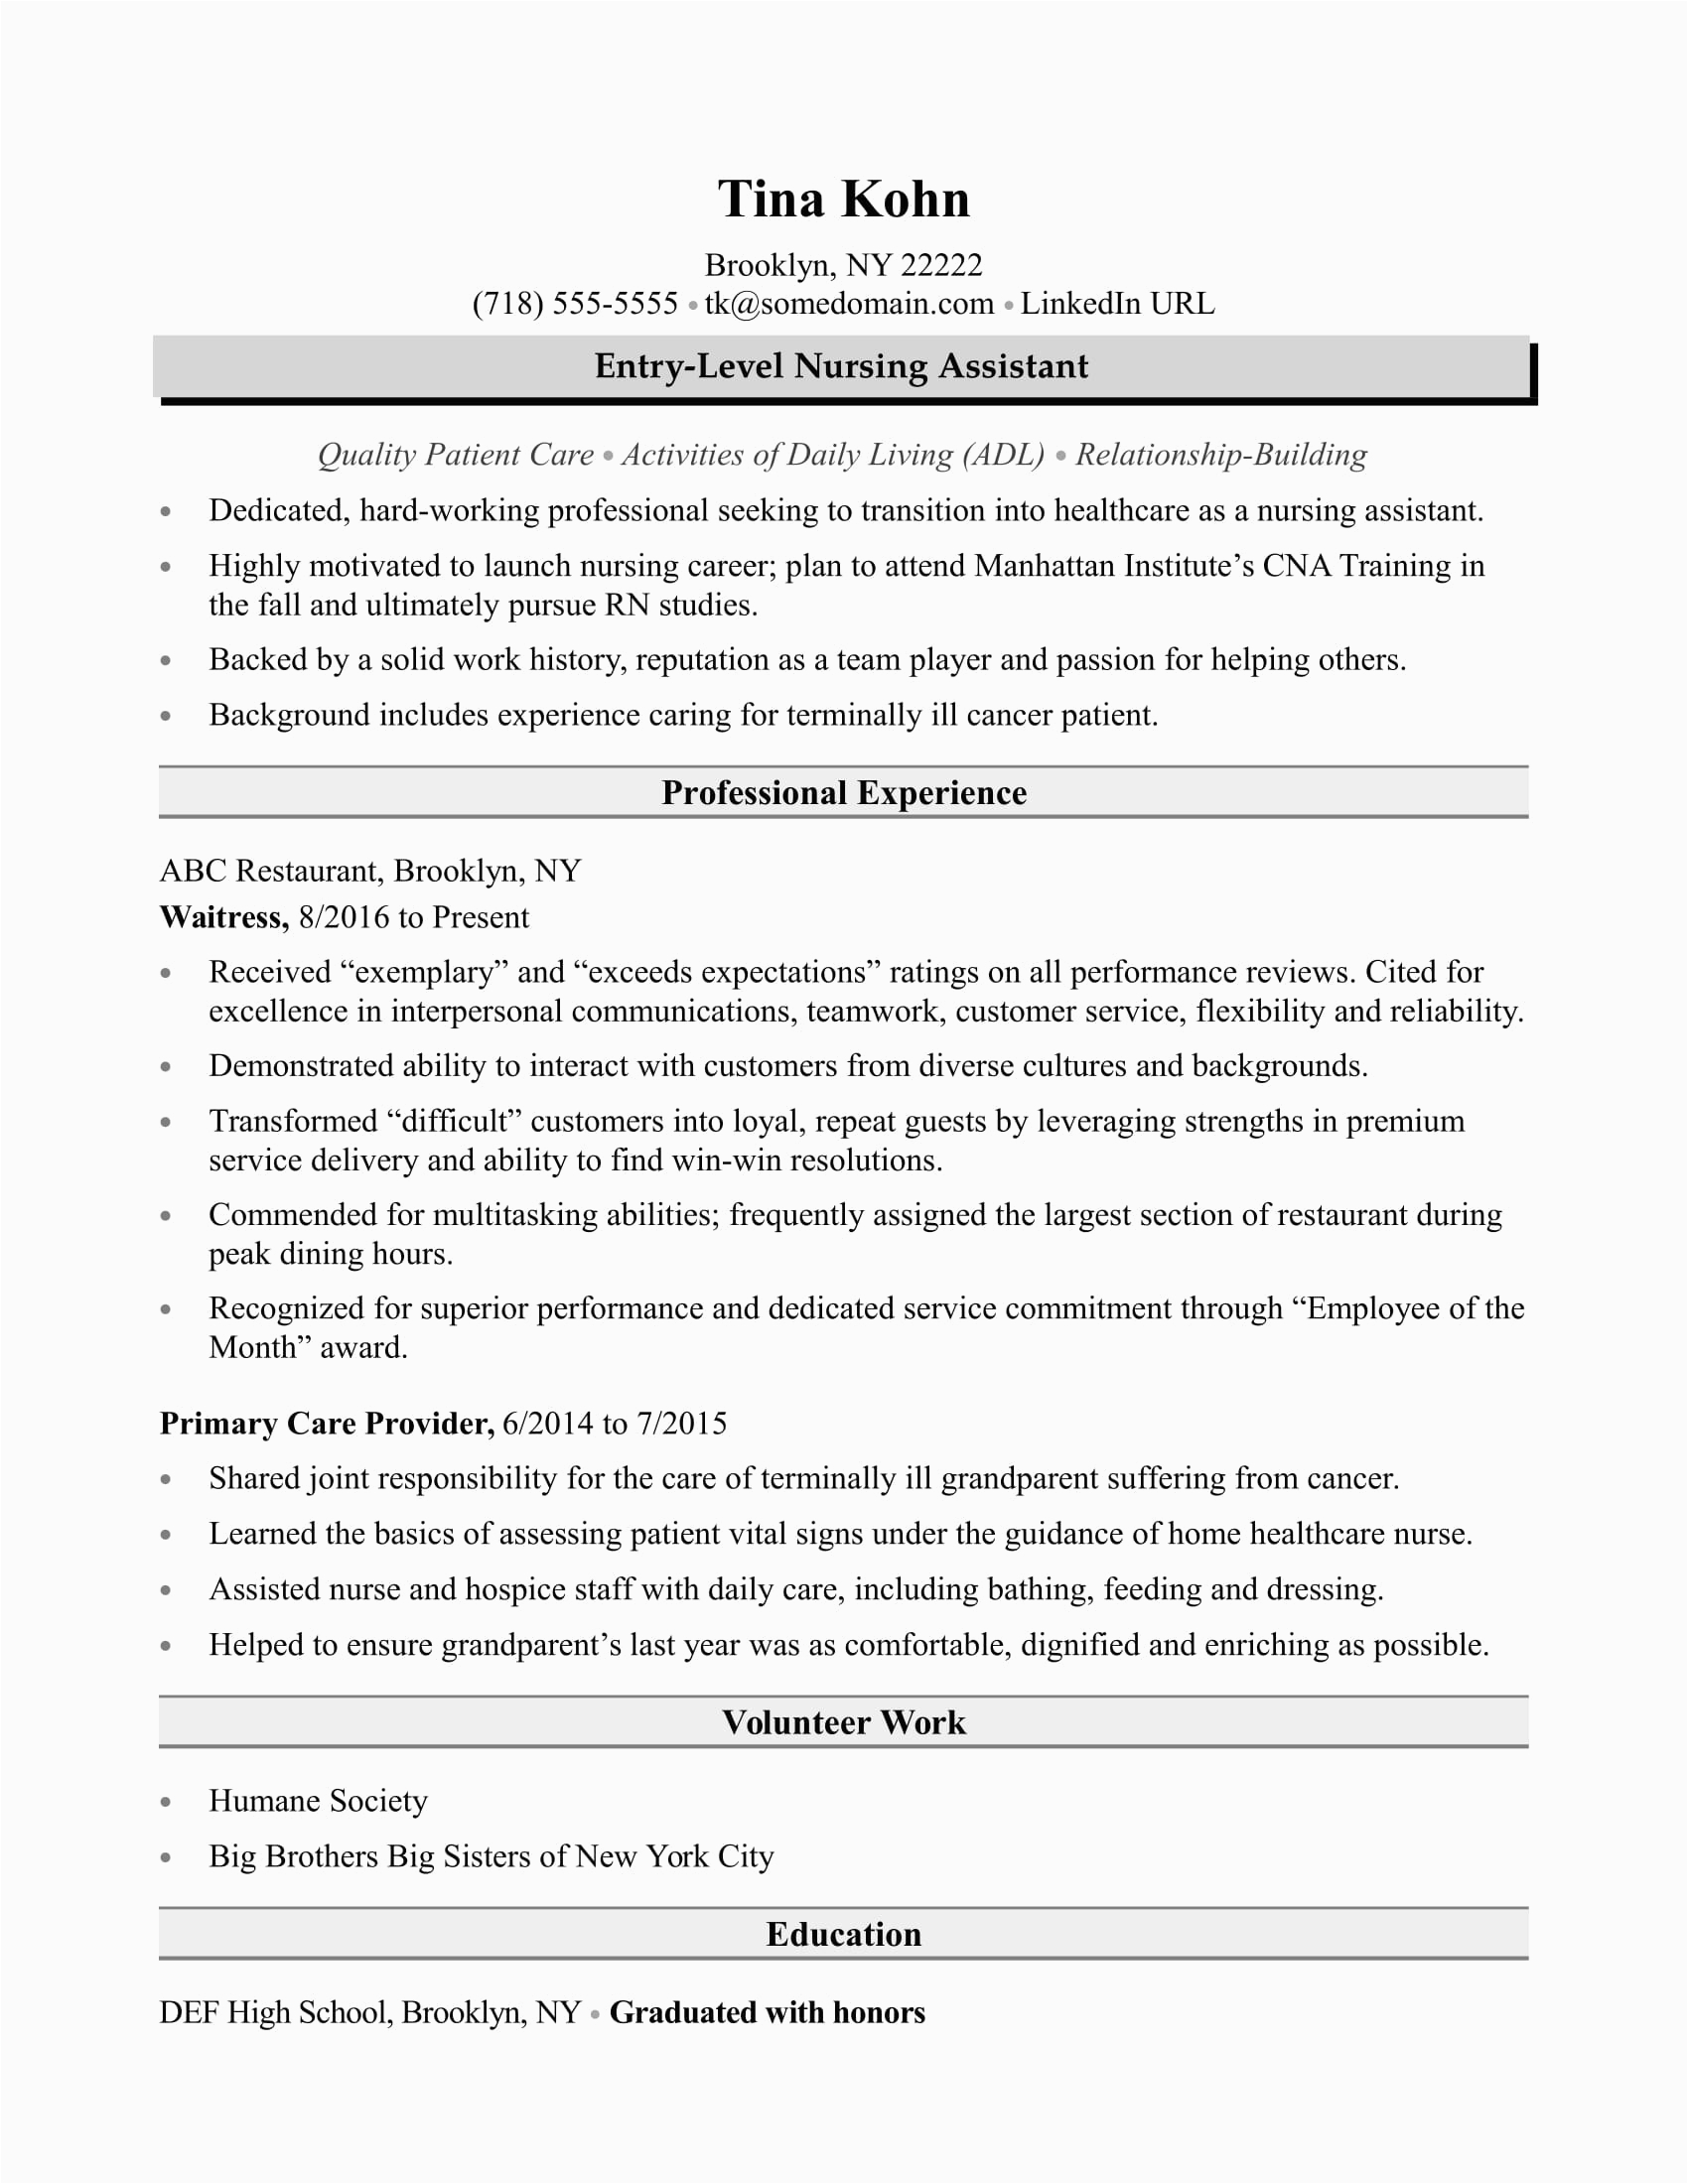 Sample Nursing assistant Resume Entry Level Nursing assistant Resume Sample